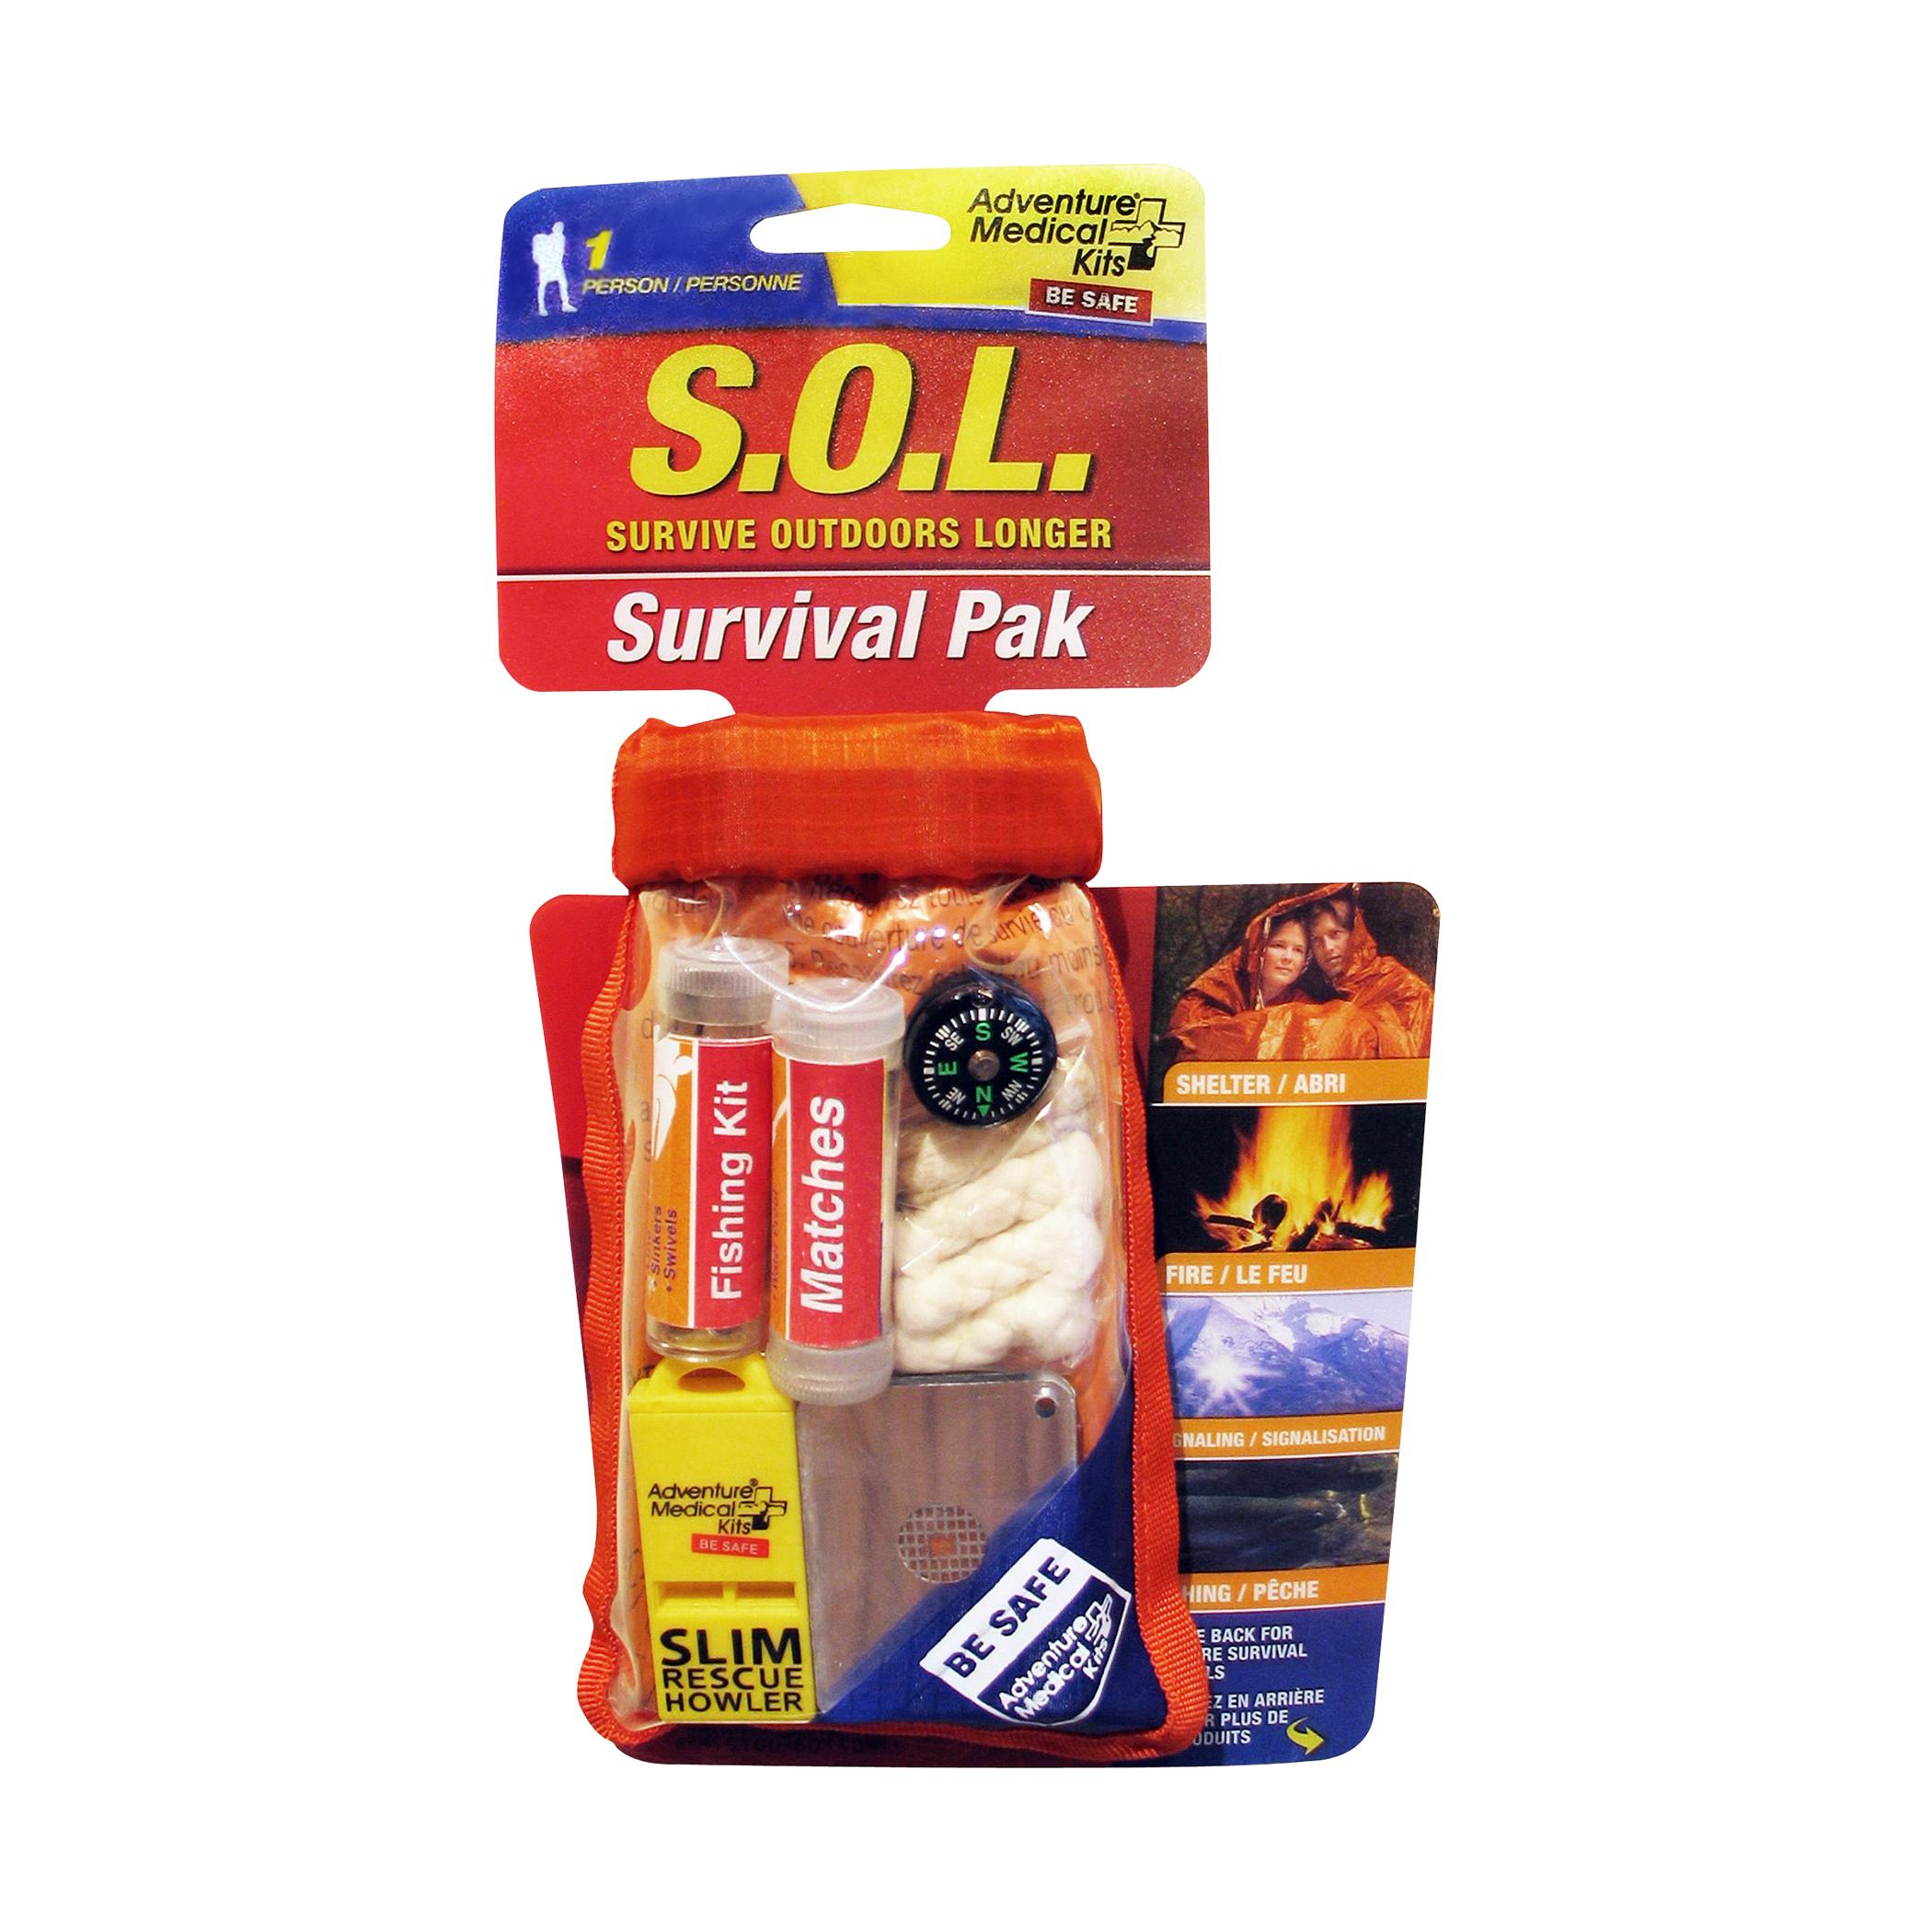 S.O.L. Survival Kit